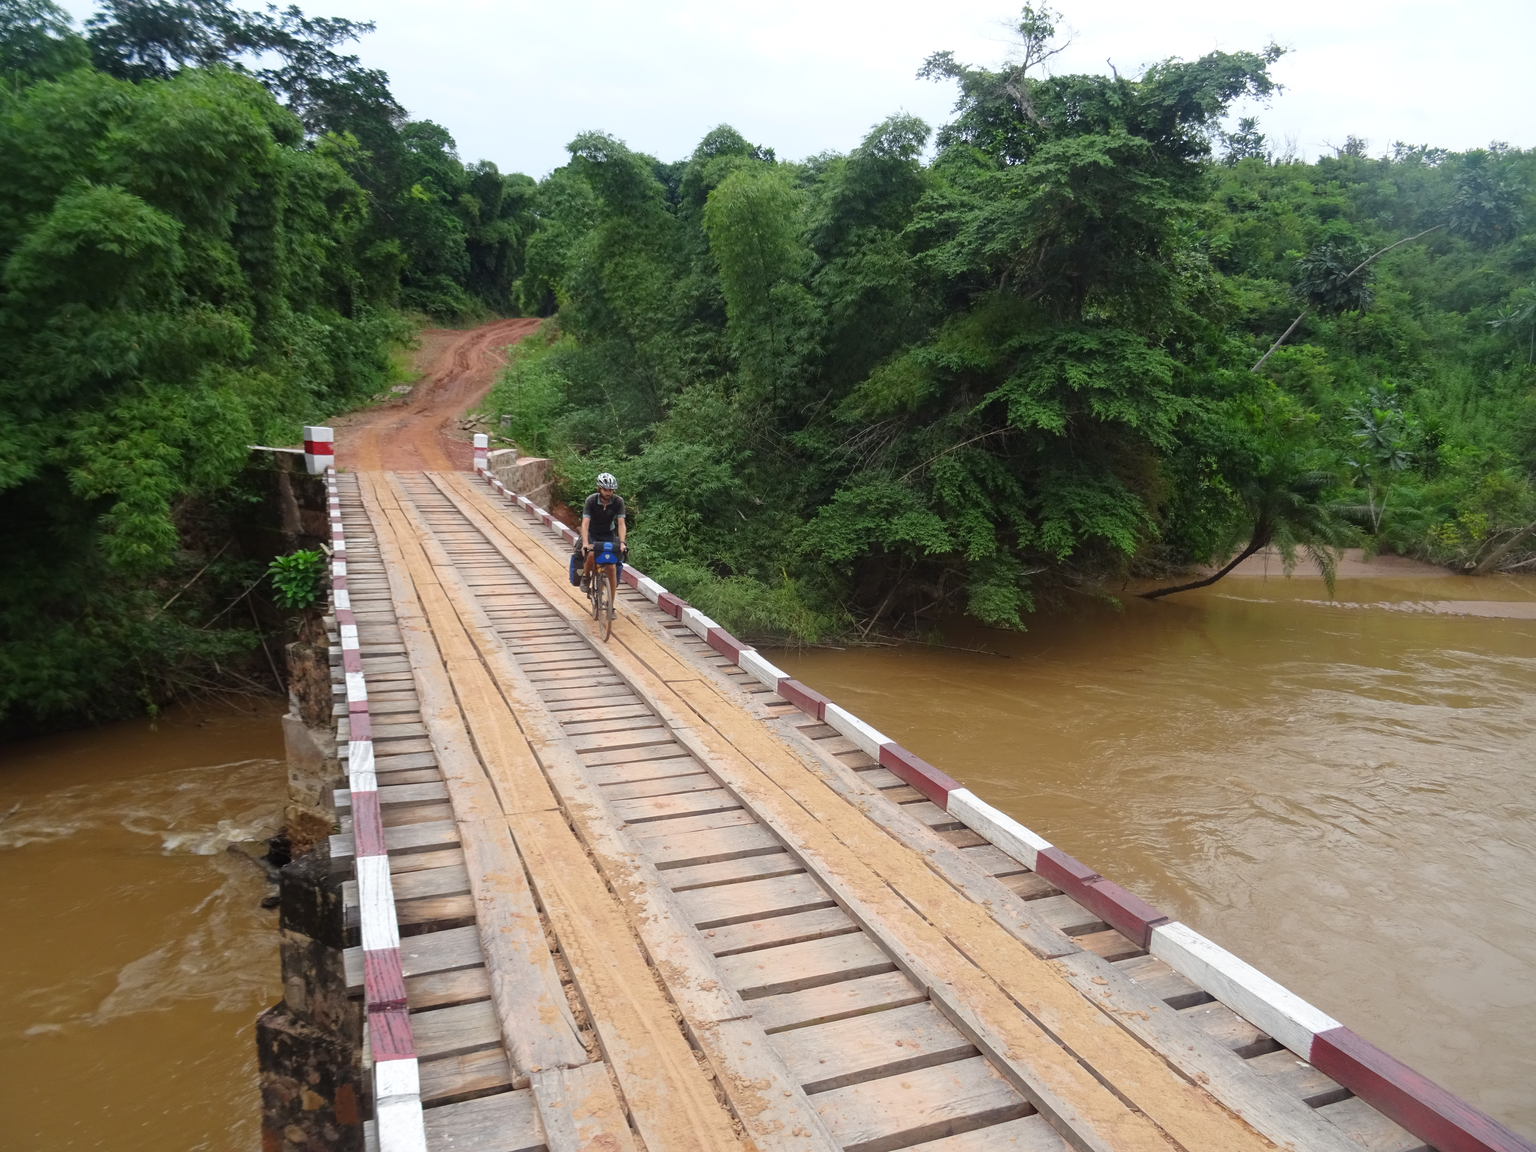 Bild 33
Demokratische Republik Kongo, nahe Luango (26.01.2020)
Wir überquerten auf unserem Weg durch Afrika zahlreiche Brücken. Dabei waren auch einige, bei denen wir glücklich waren, ganz auf der and ...